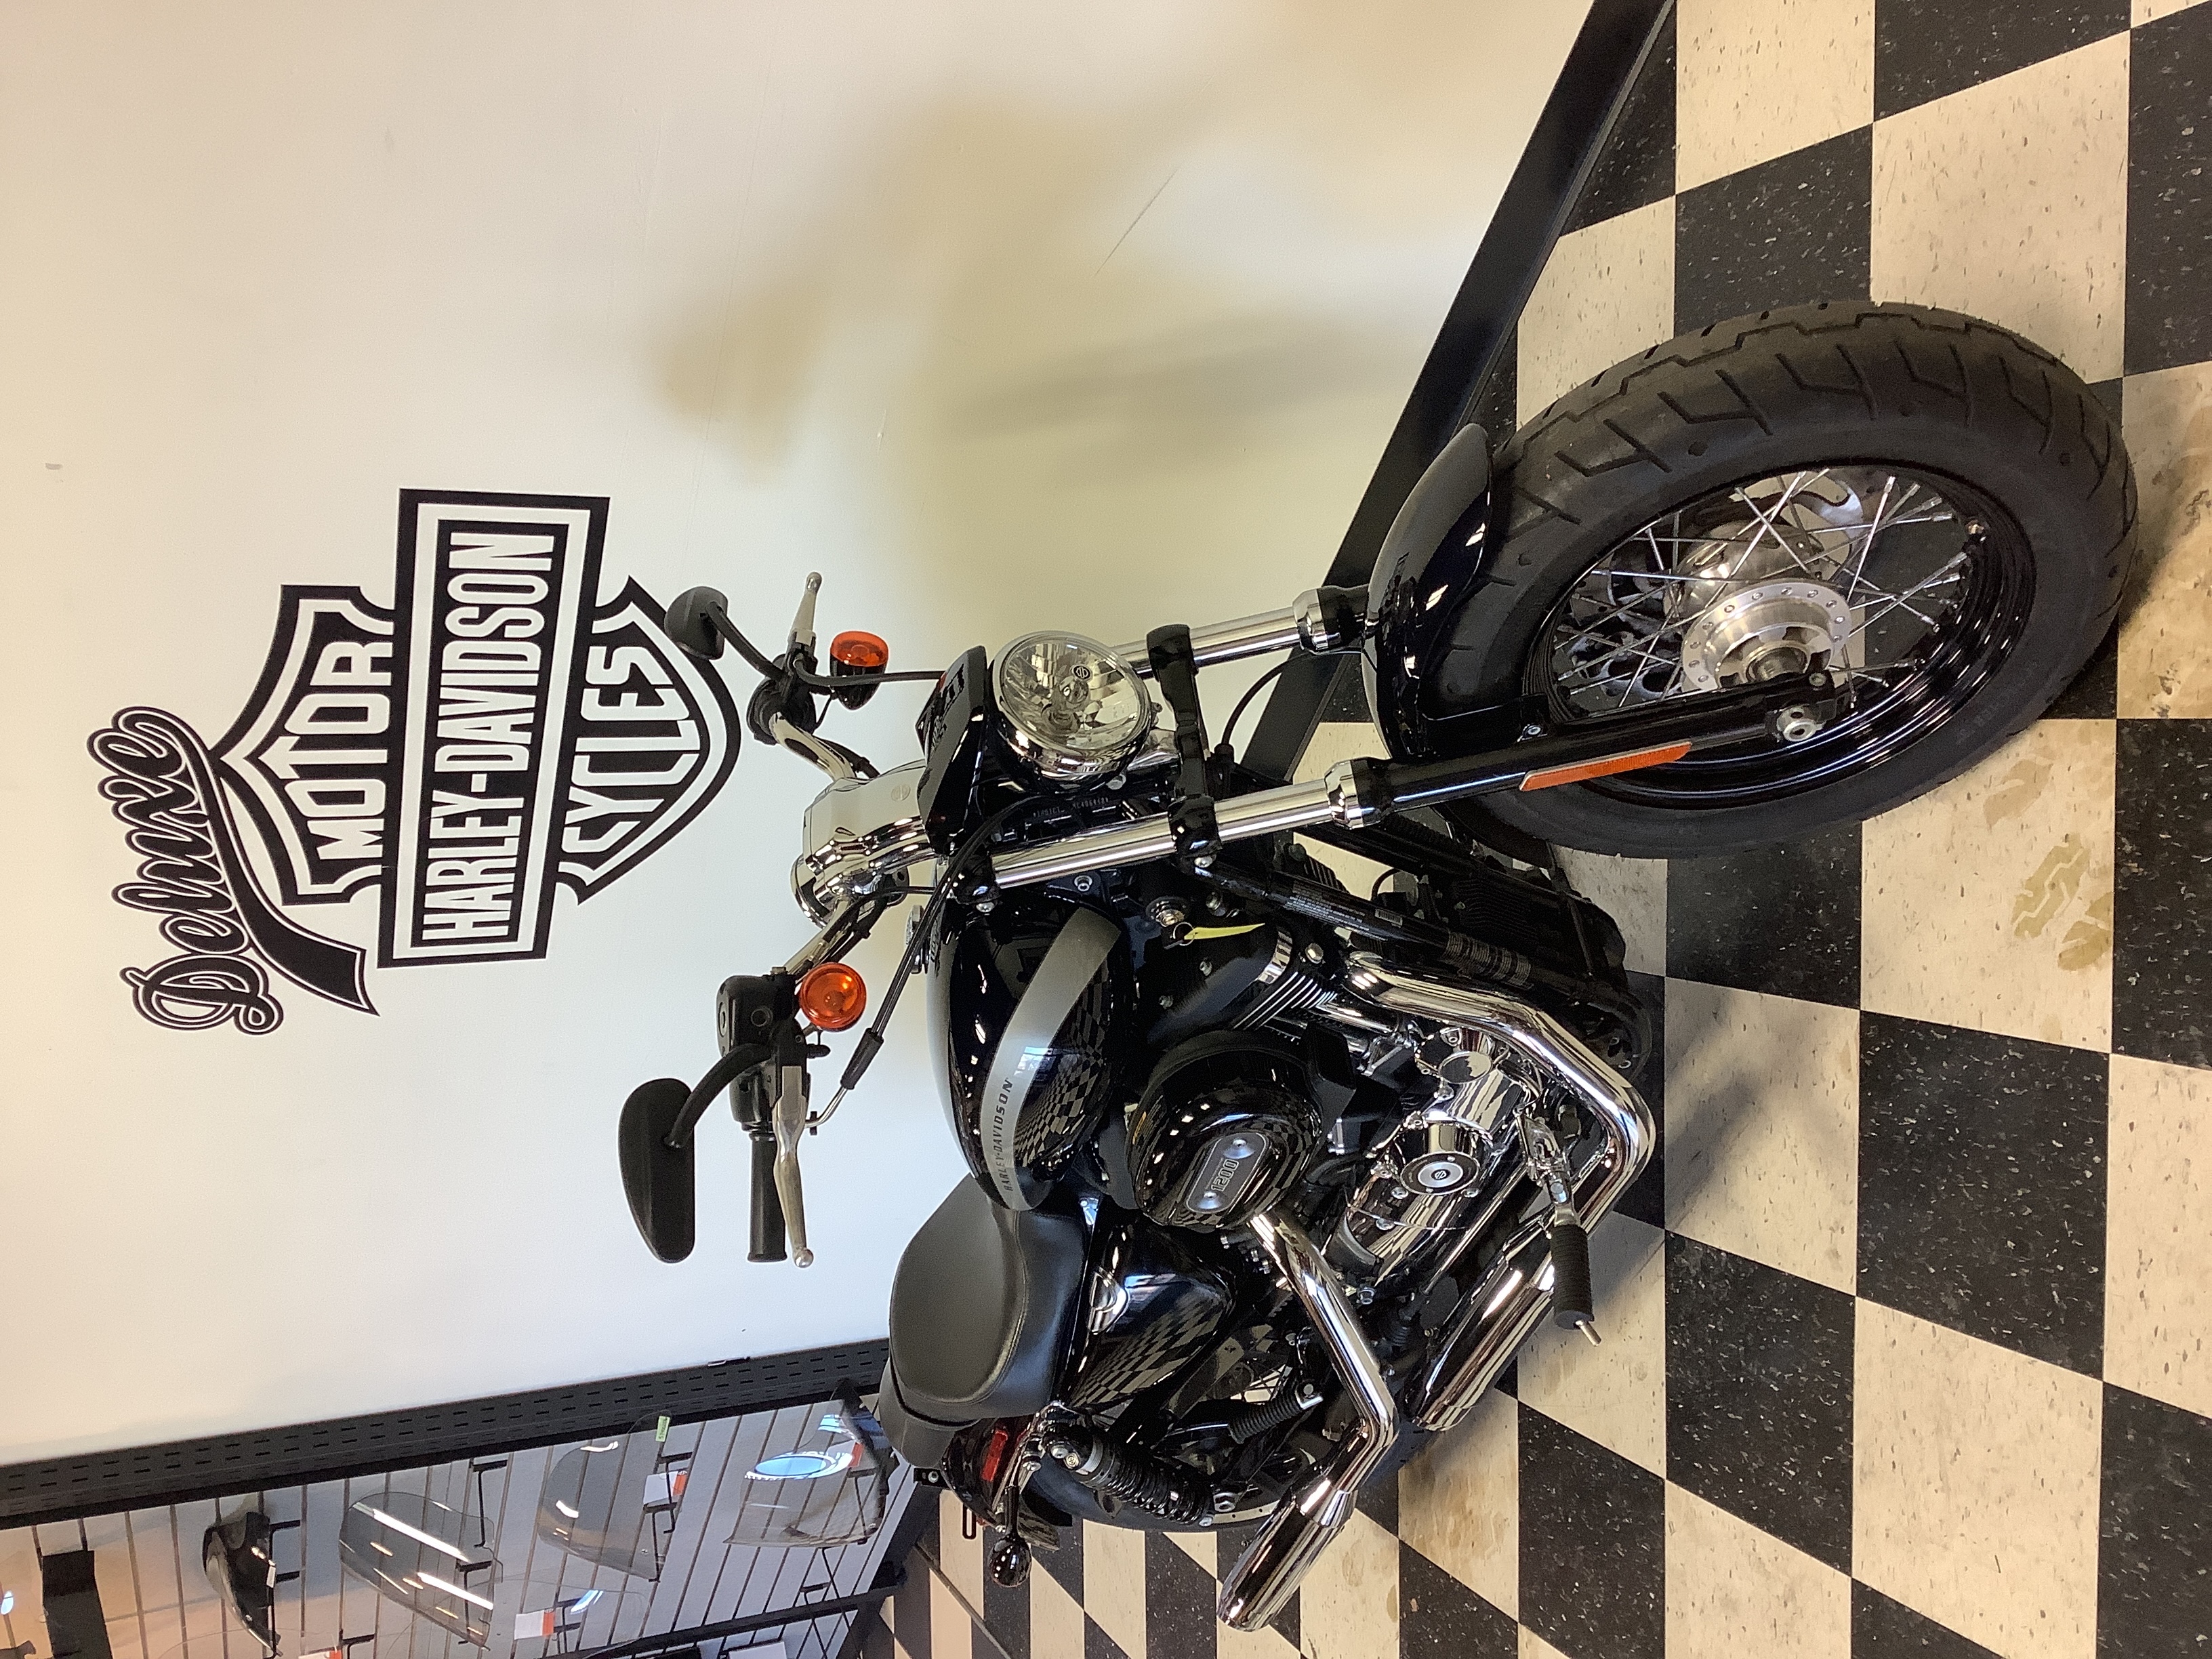 2019 Harley-Davidson Sportster 1200 Custom at Deluxe Harley Davidson